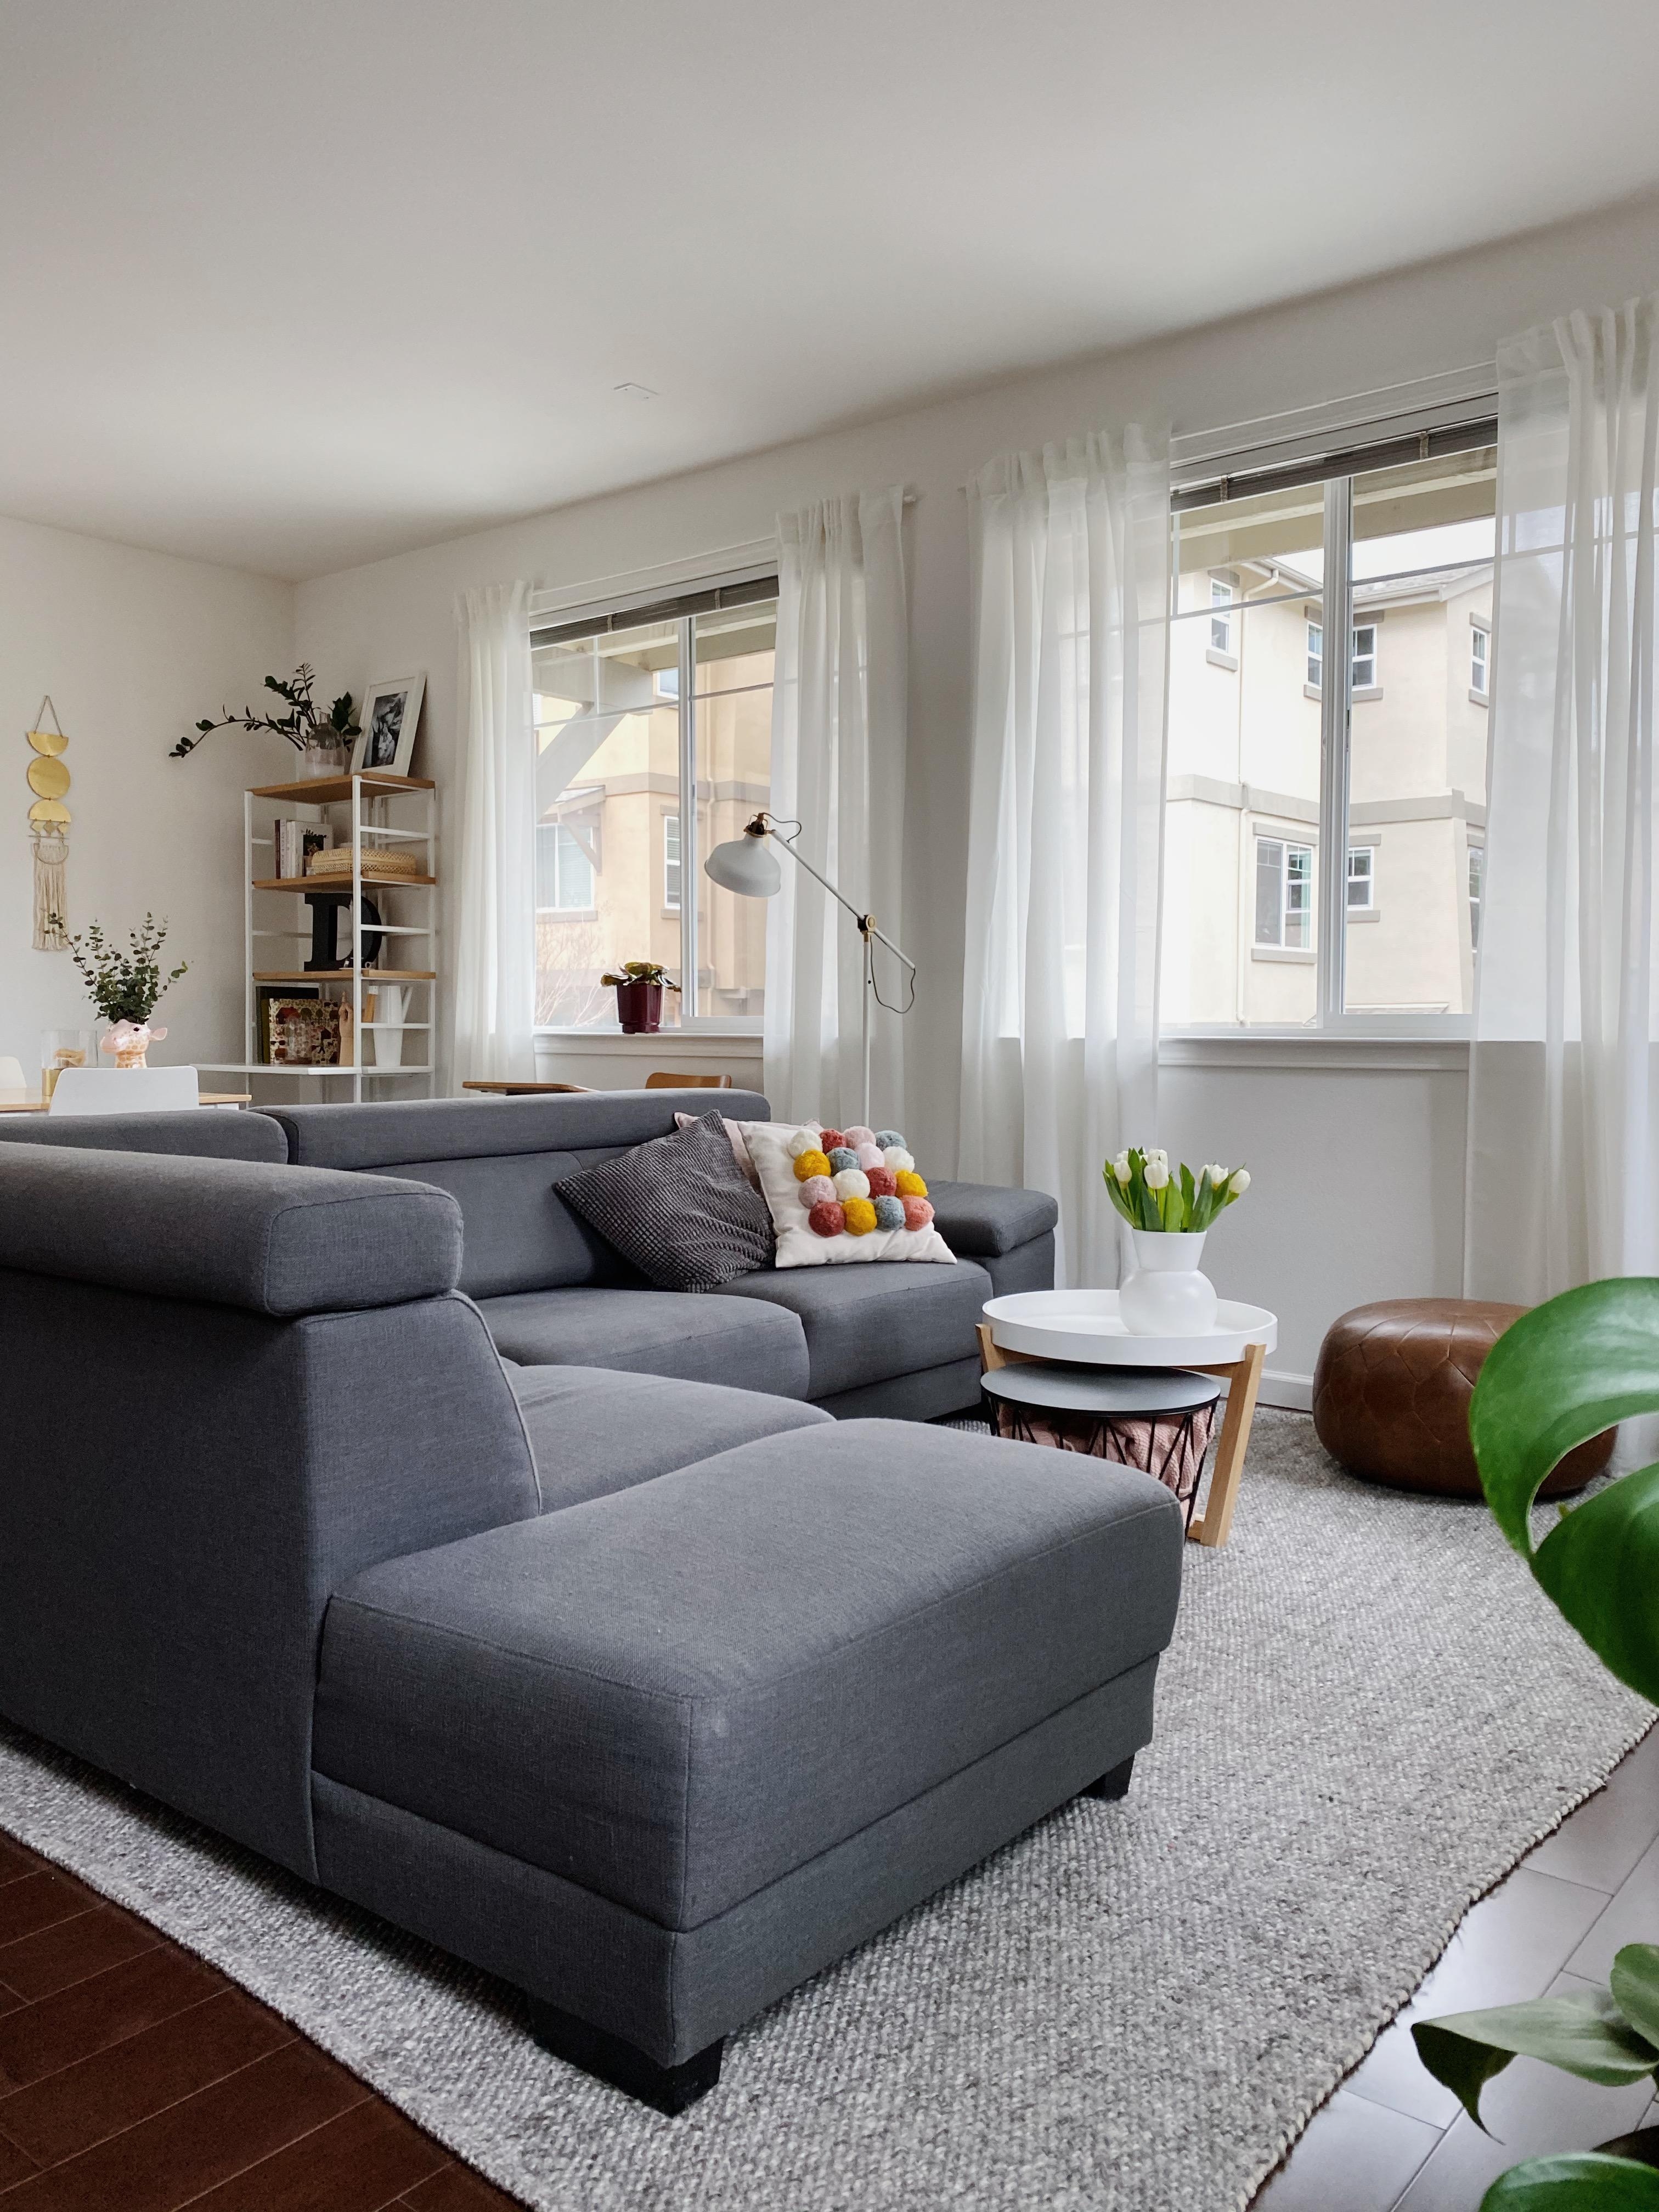 Perfekter Platz vorm Kamin #wohnzimmer #homeinspiration #sofa #gemütlich